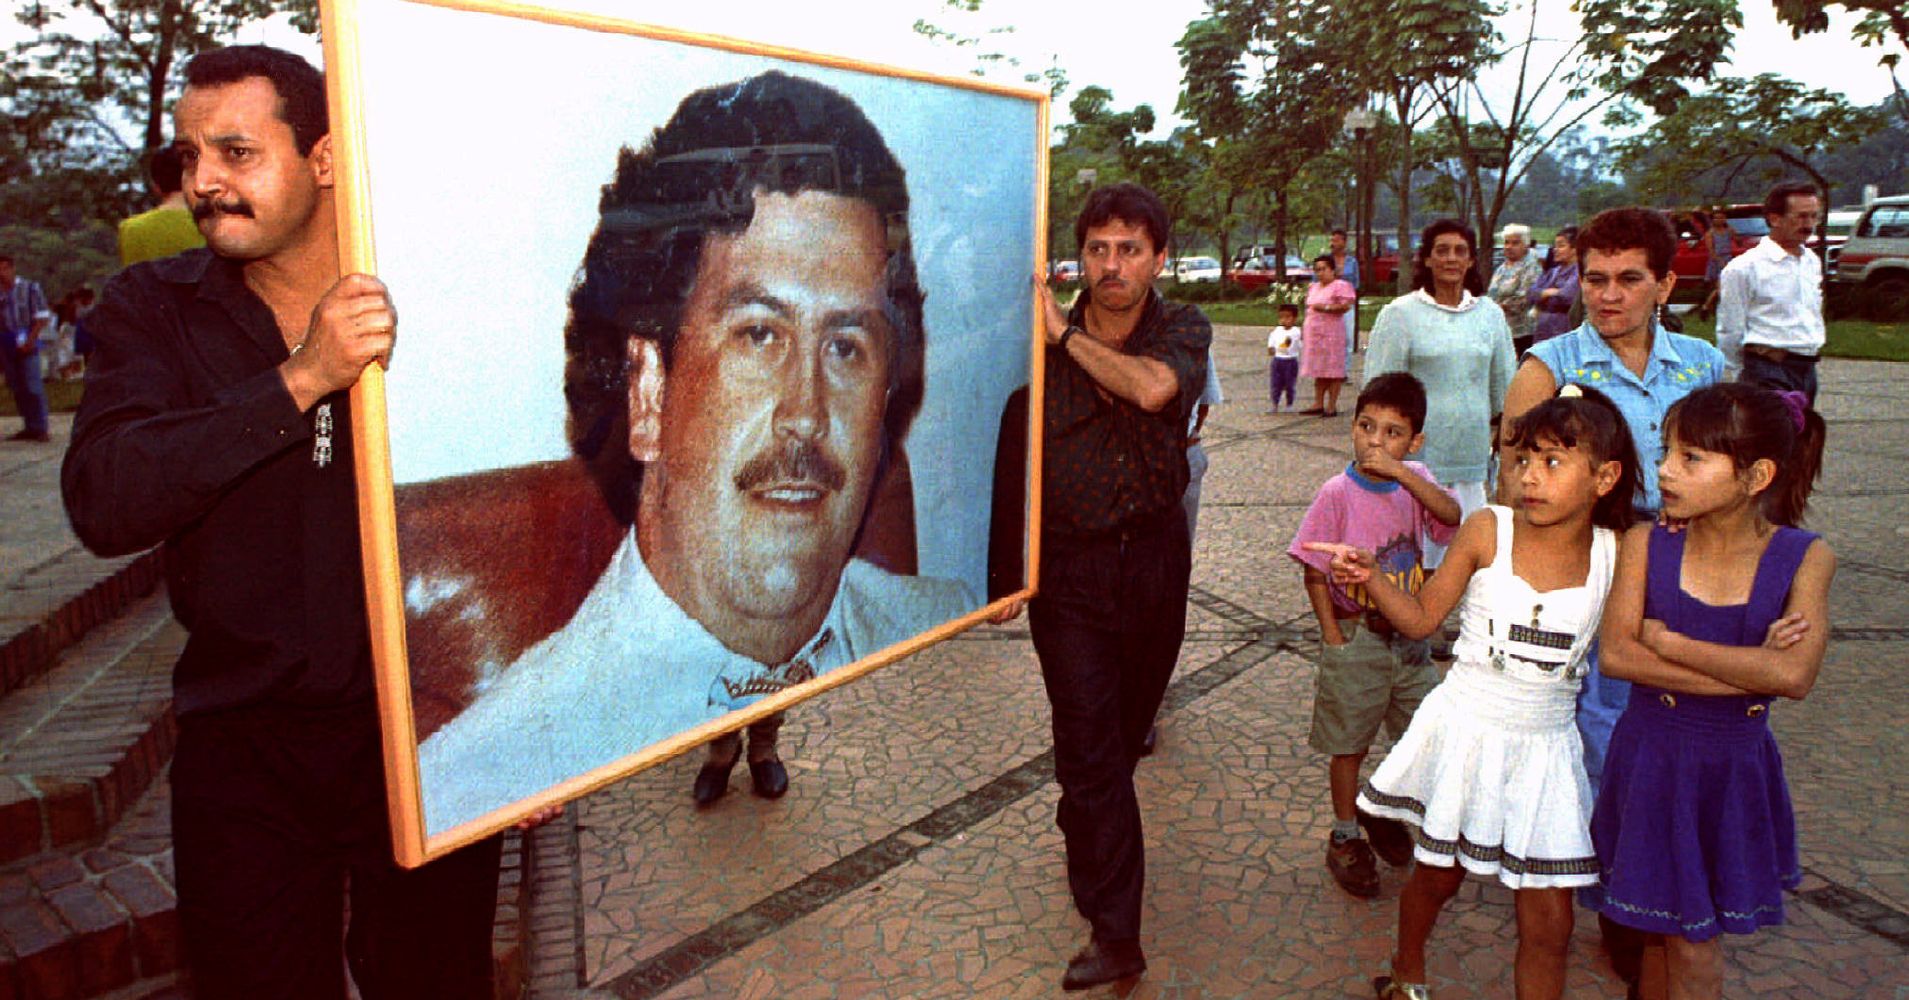 Pablo Escobar Son